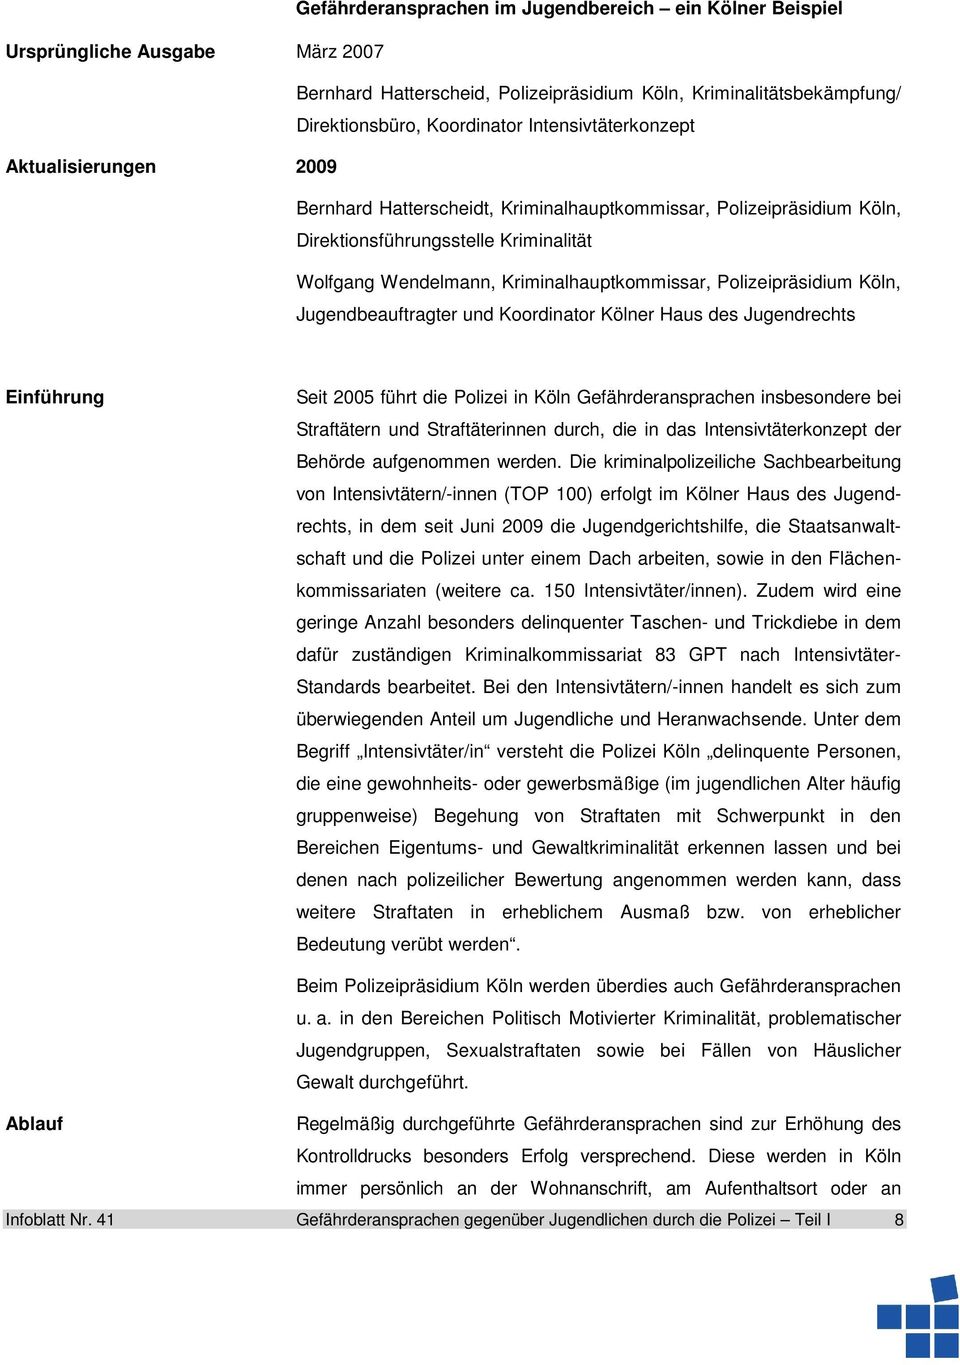 Polizeipräsidium Köln, Jugendbeauftragter und Koordinator Kölner Haus des Jugendrechts Einführung Seit 2005 führt die Polizei in Köln Gefährderansprachen insbesondere bei Straftätern und